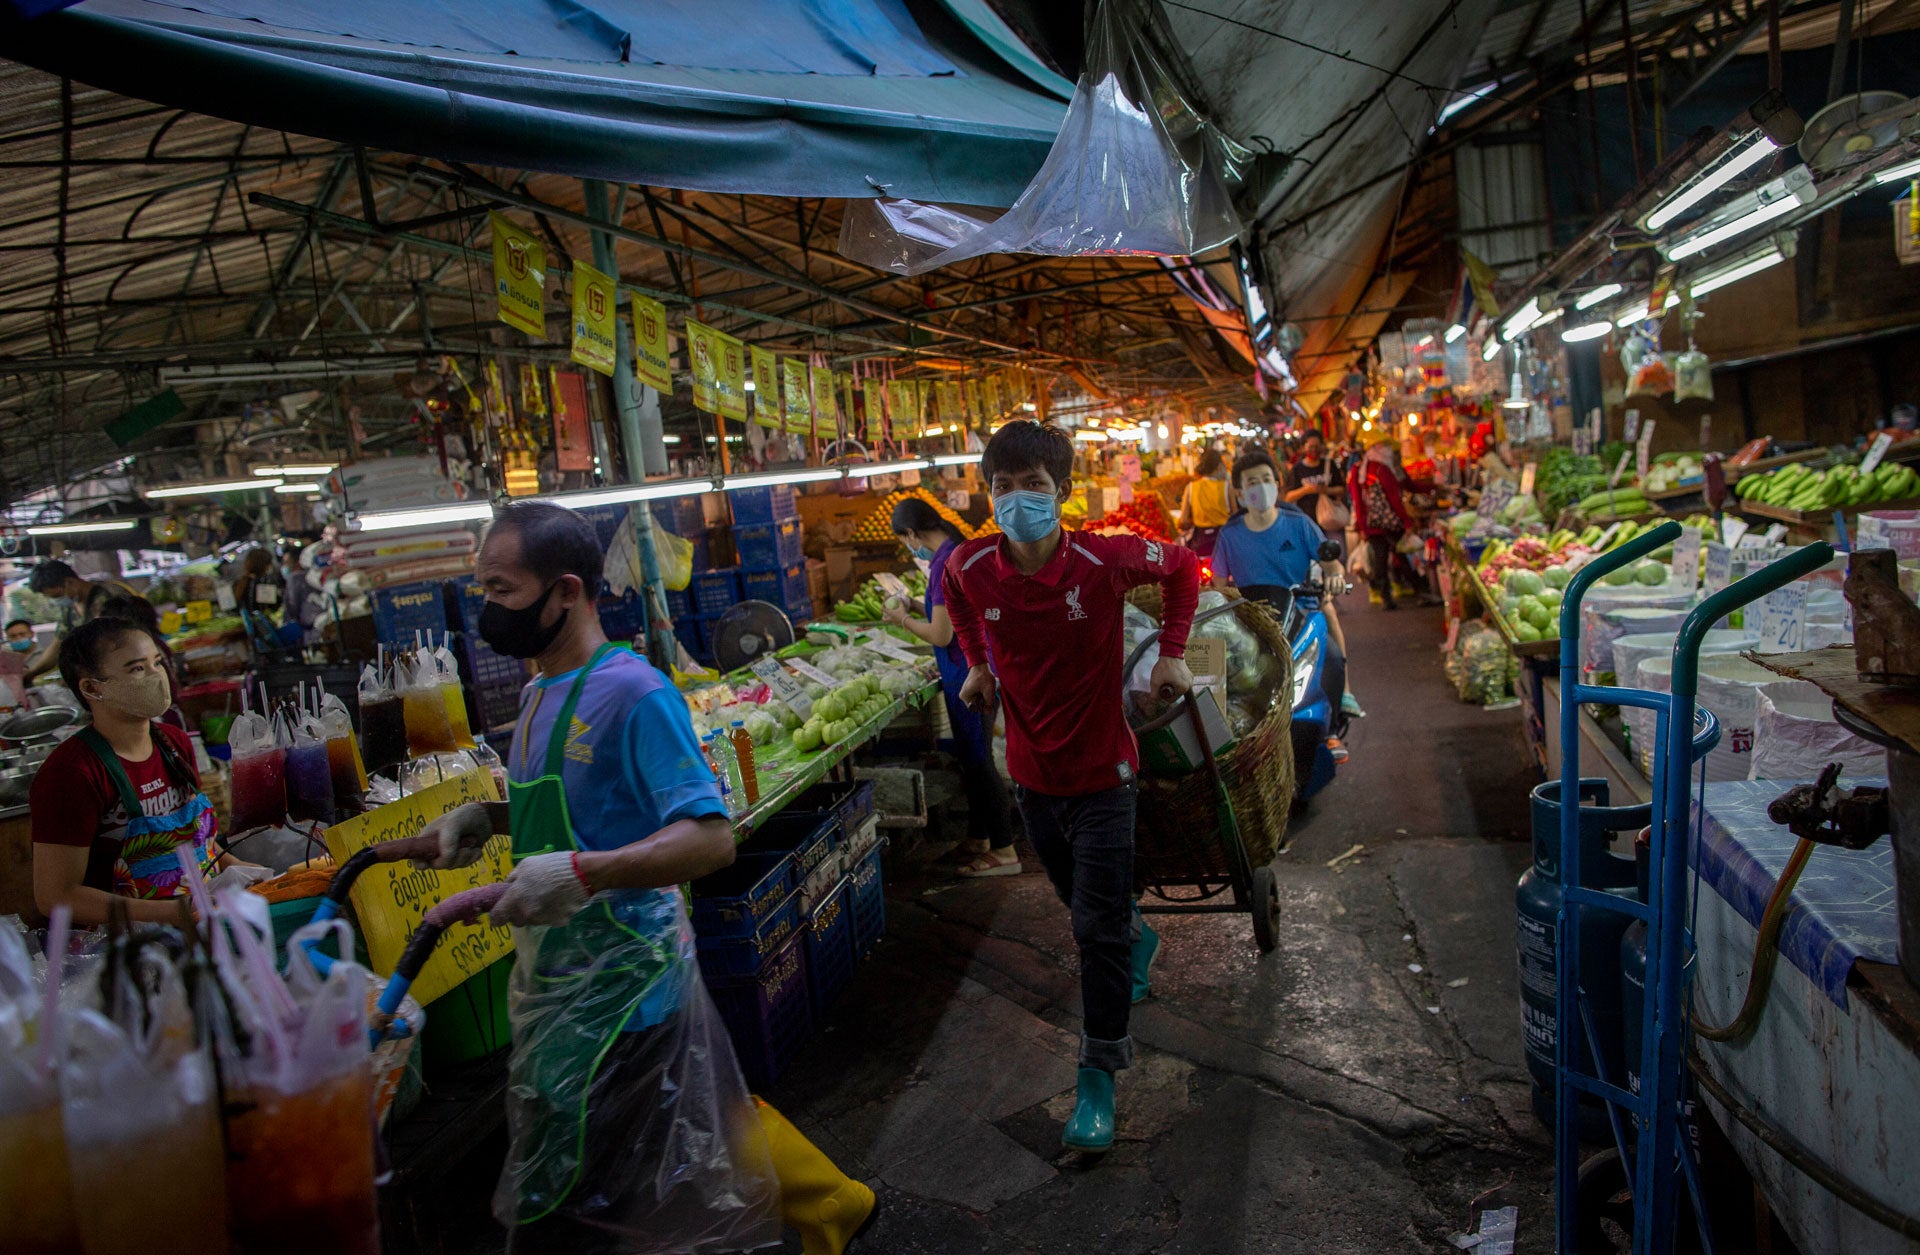 2020년 4월 9일, 태국 방콕의 청과물 시장에서 마스크를 착용한 사람들이 좁은 통로를 따라 수레를 끌고 있다.